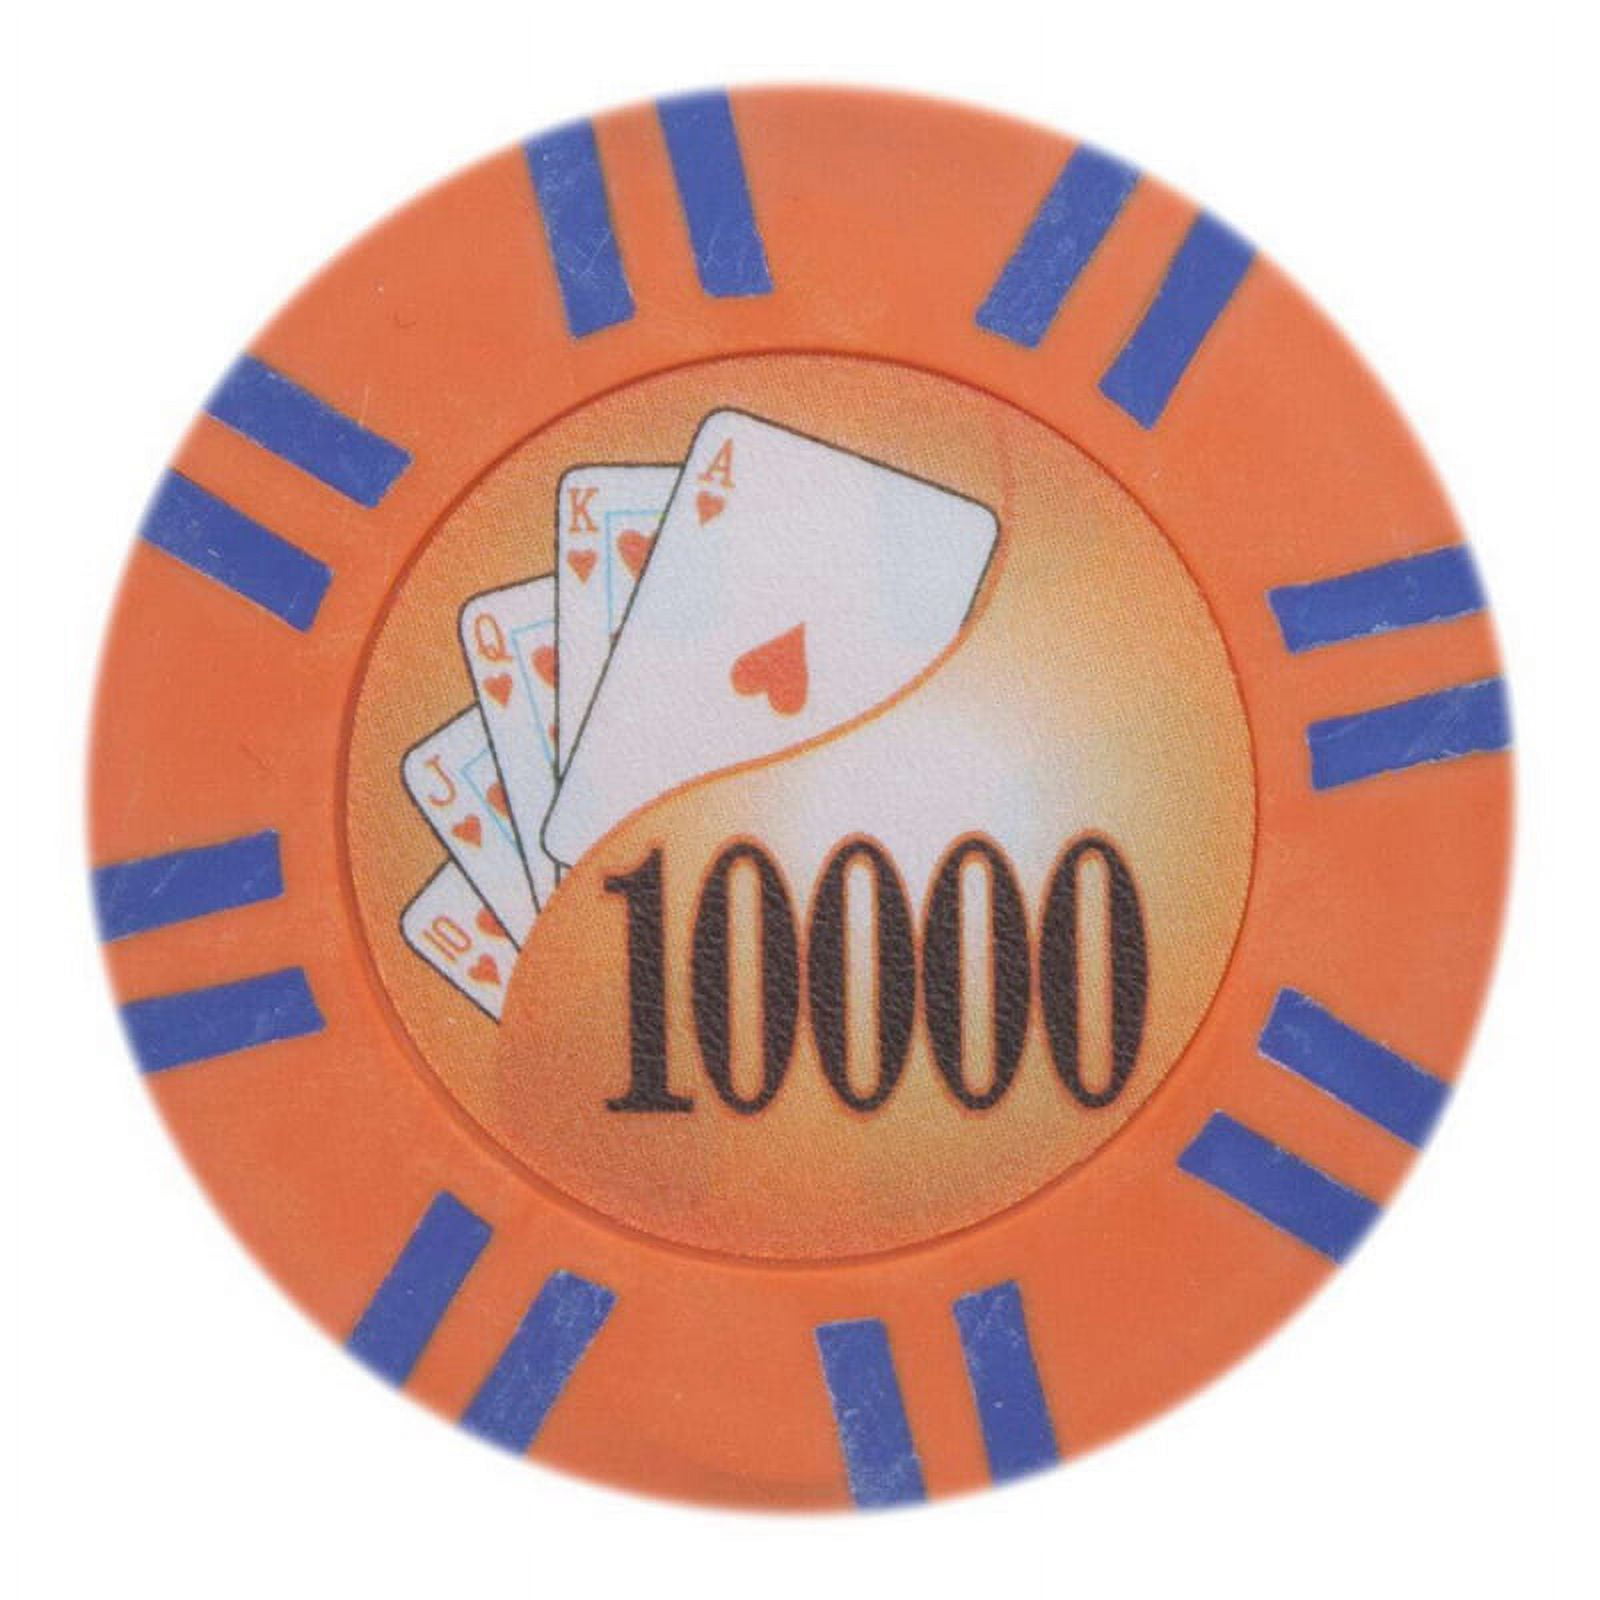 Cptst-10000-25 8 G 2 Stripe Twist Poker Chips - 10000, Pack Of 25